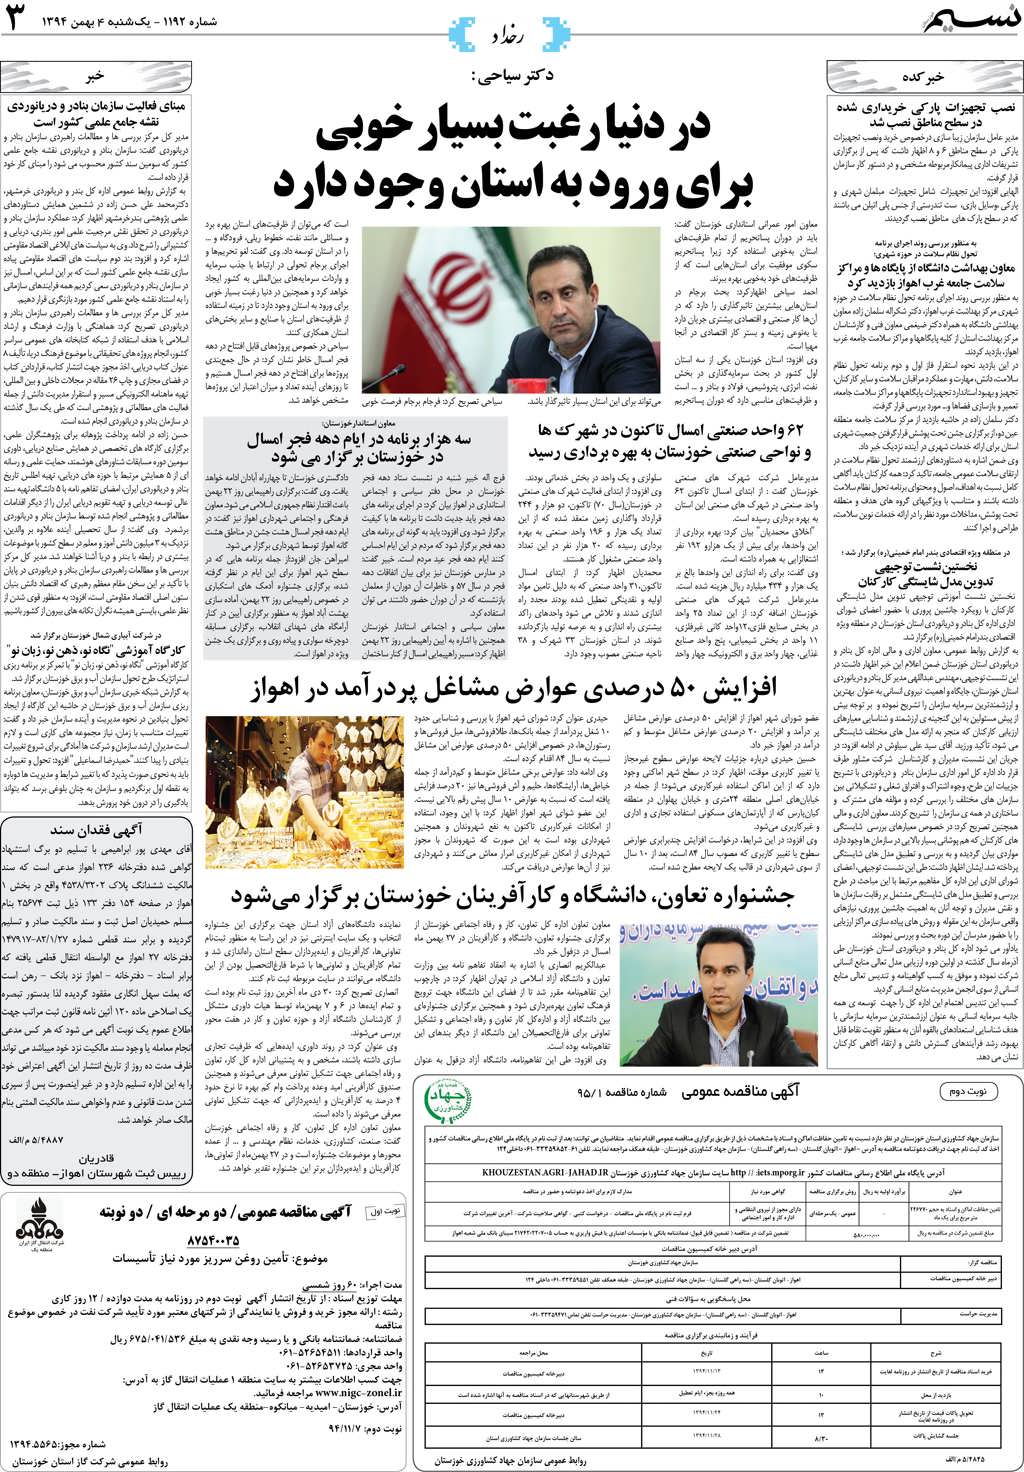 صفحه رخداد روزنامه نسیم شماره 1192